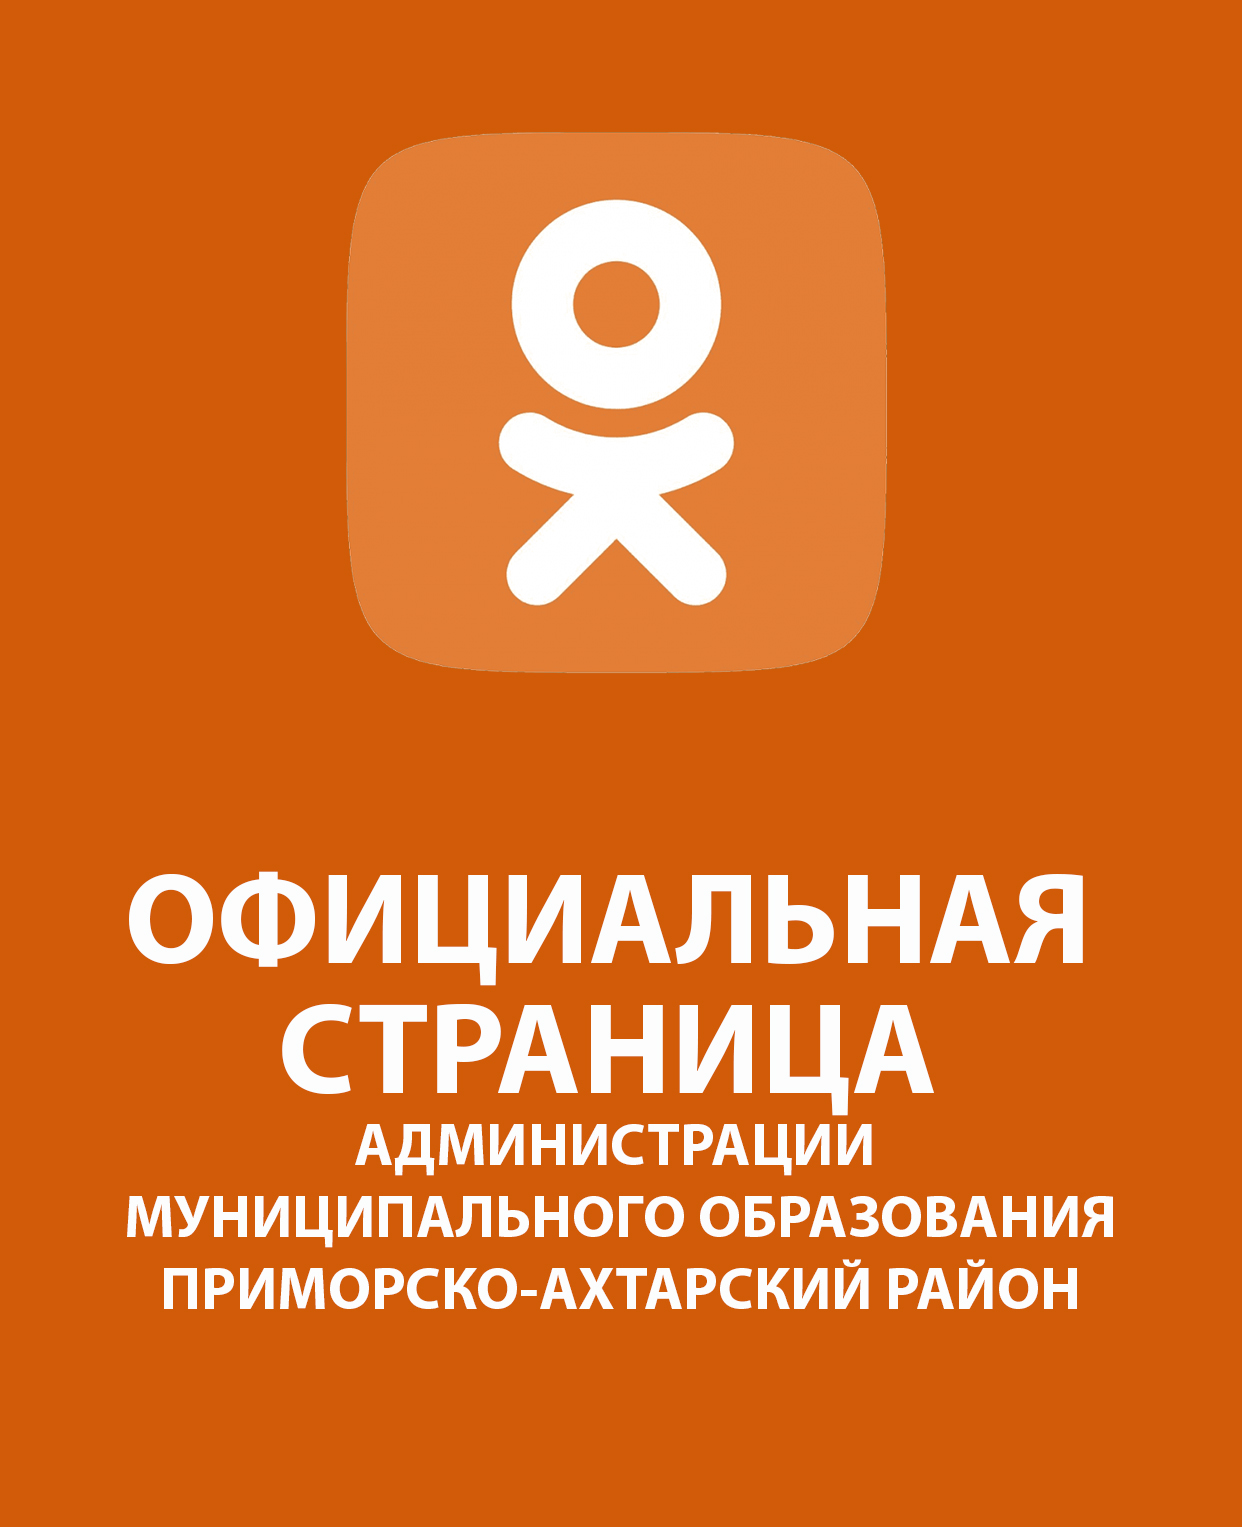 Официальная страница Одноклассники